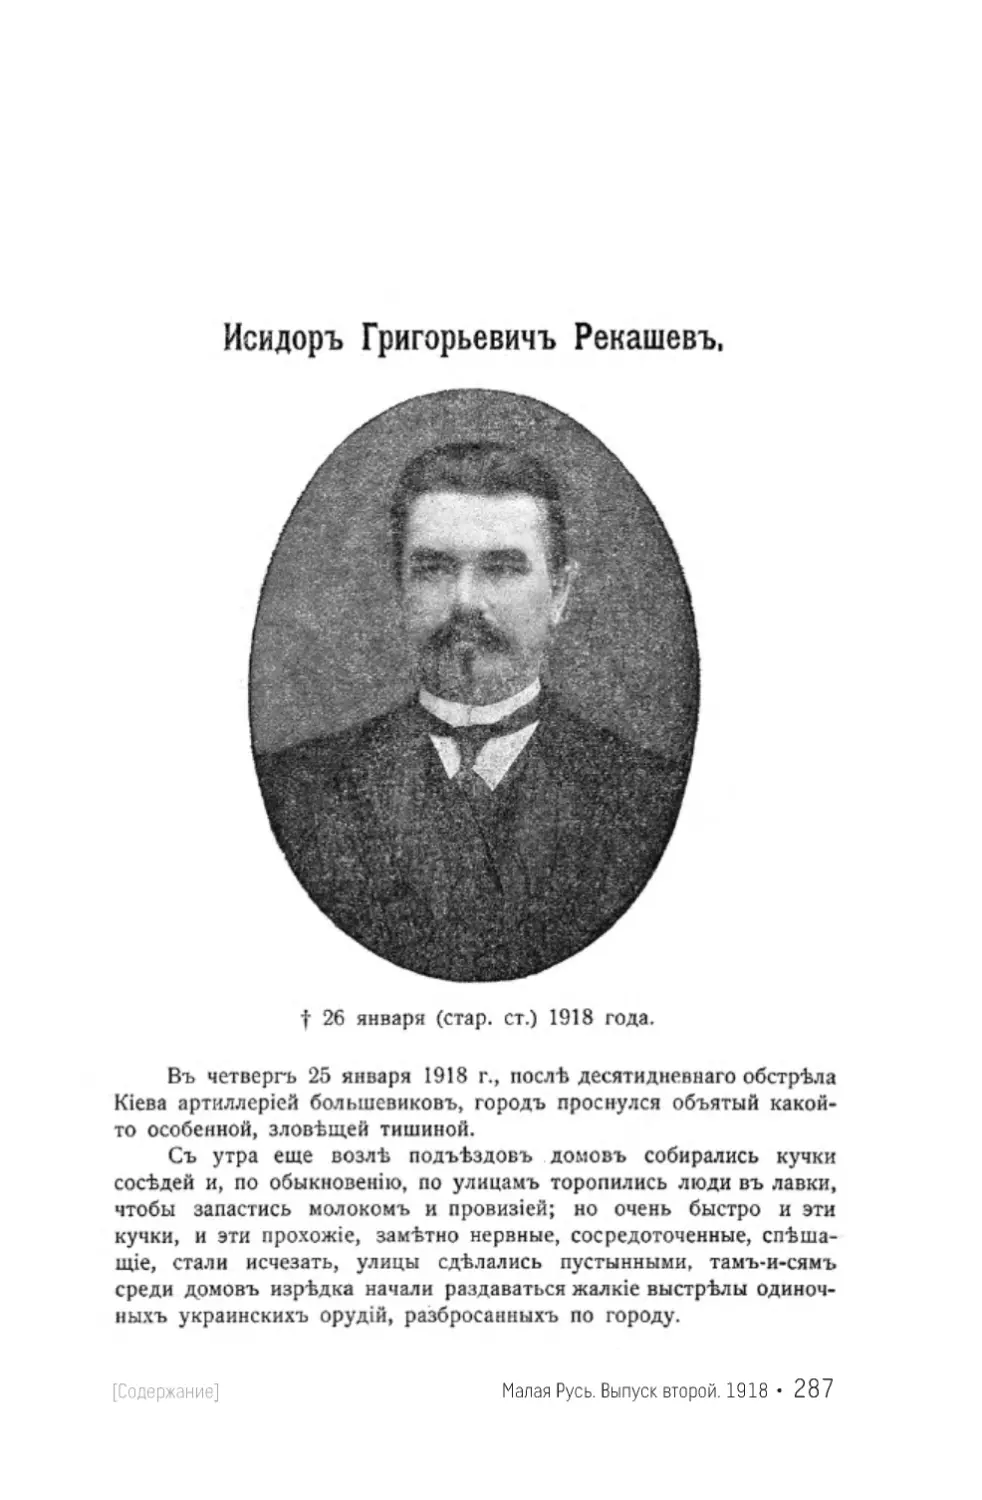 Г. Д. Исидор Григорьевич Рекашев